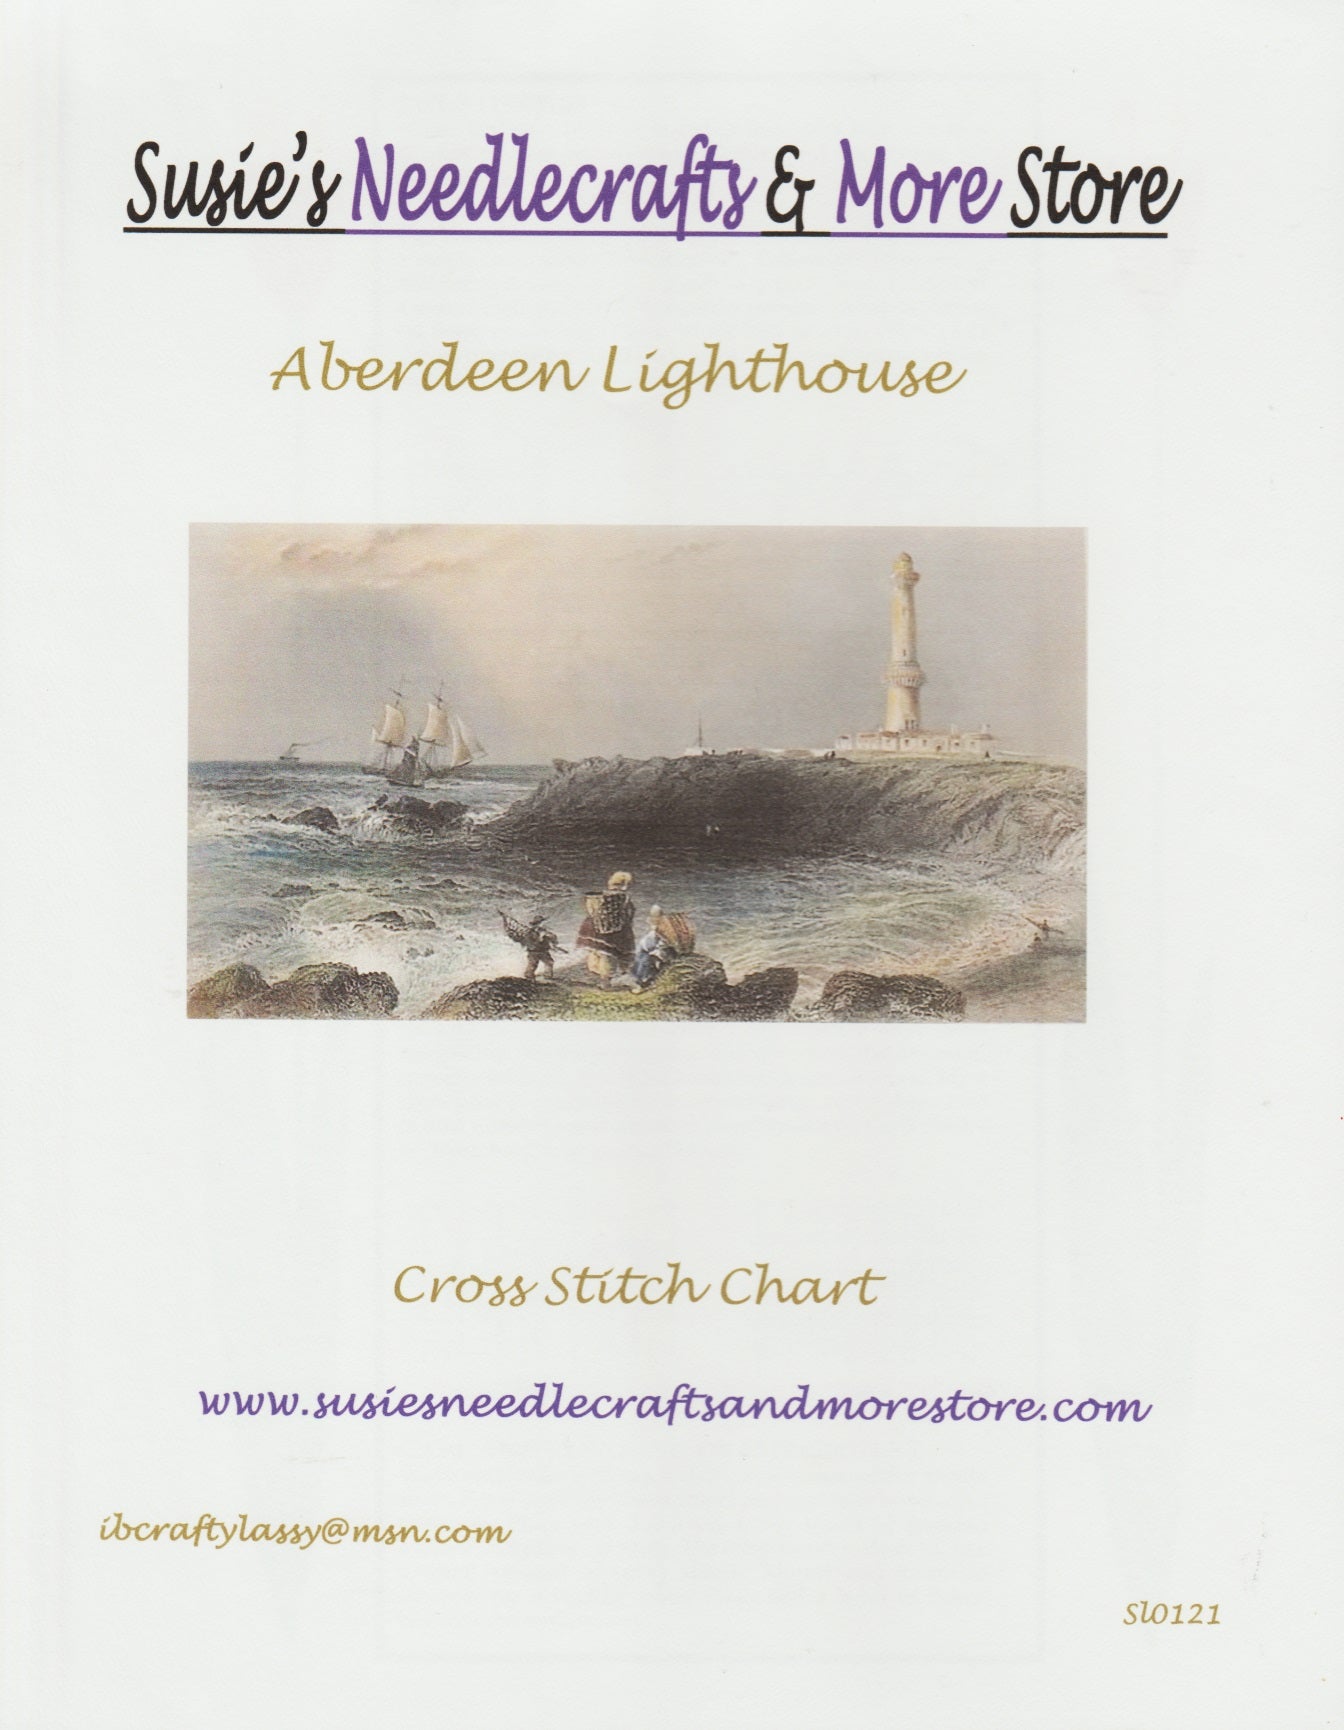 Susie's Needlecraft Aberdeen Lighthouse cross stitch pattern